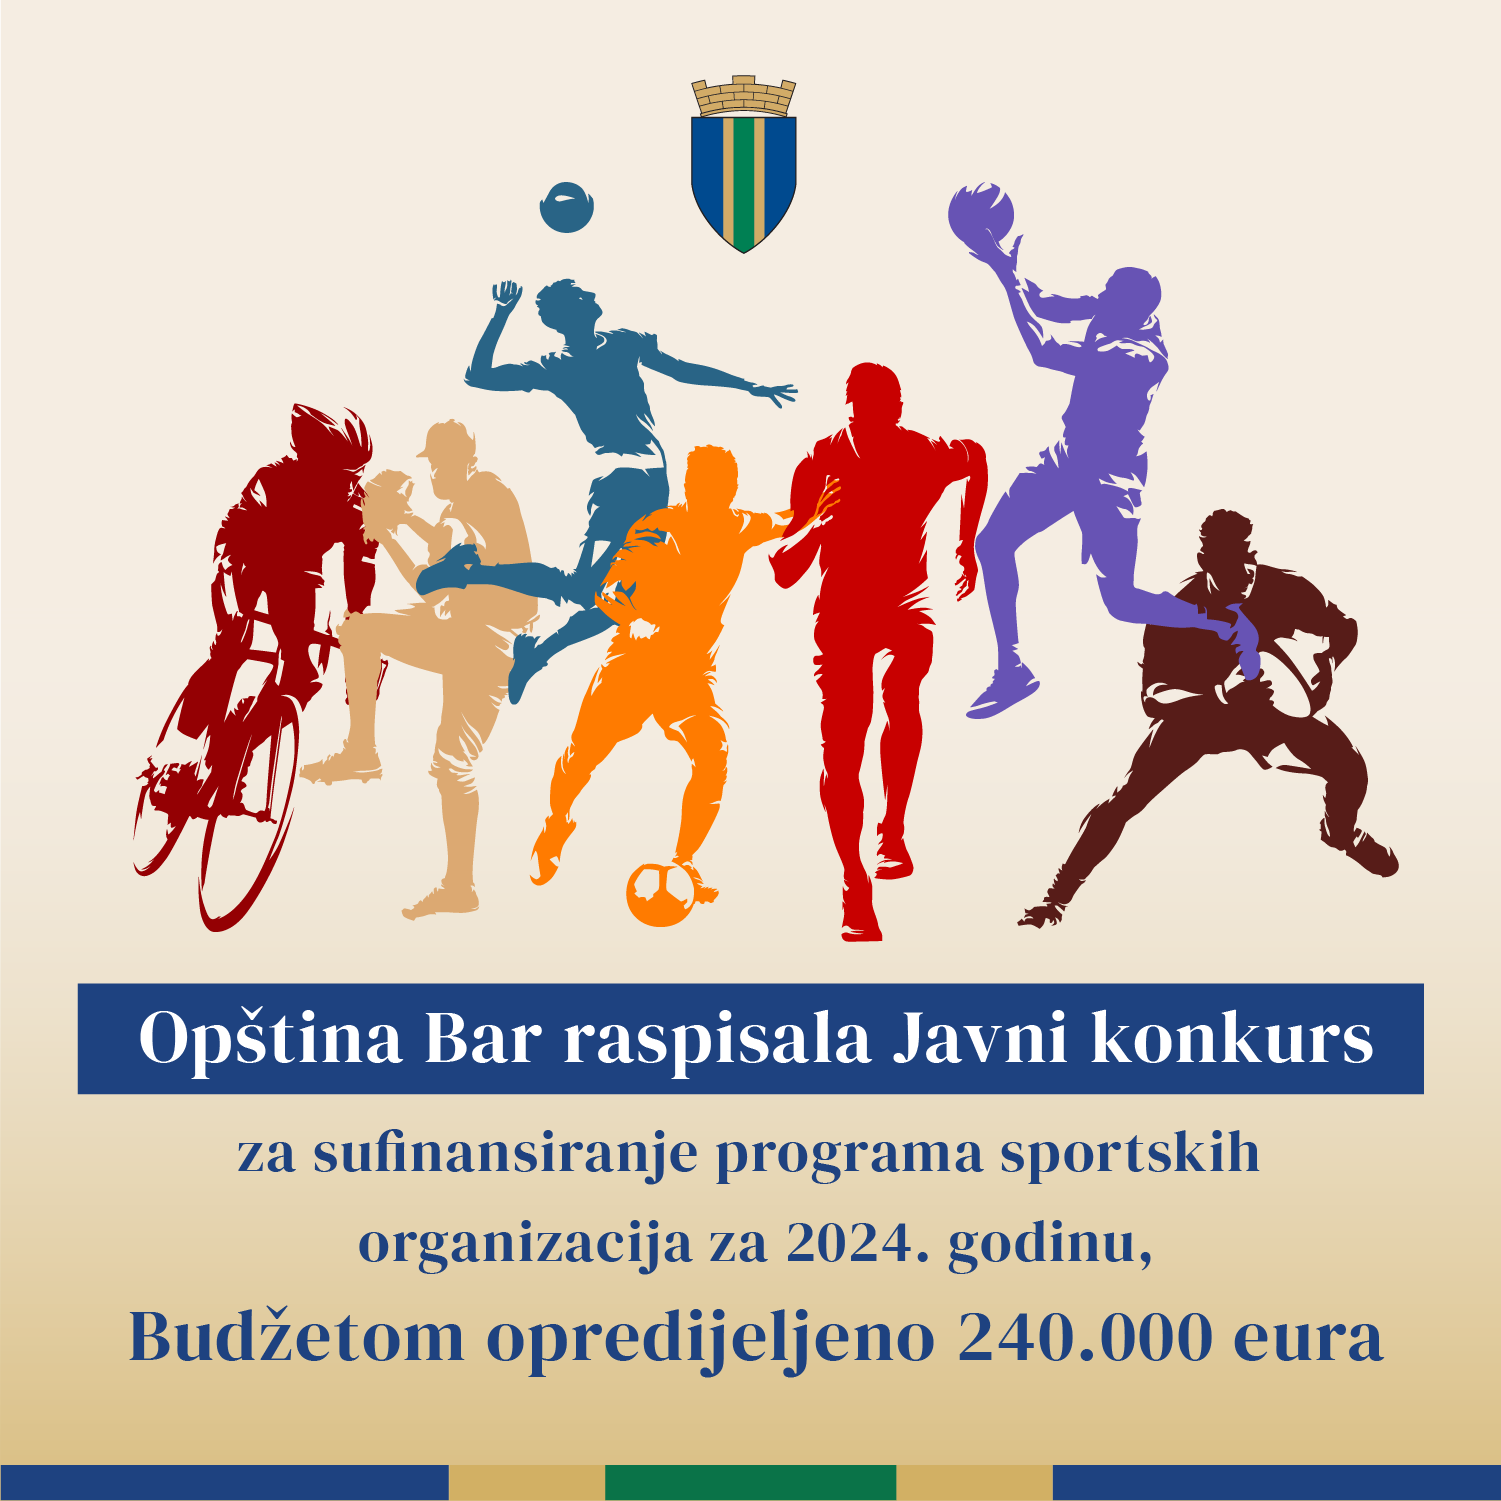 Opština Bar raspisala Javni konkurs za sufinansiranje programa rada sportskih organizacija za 2024.